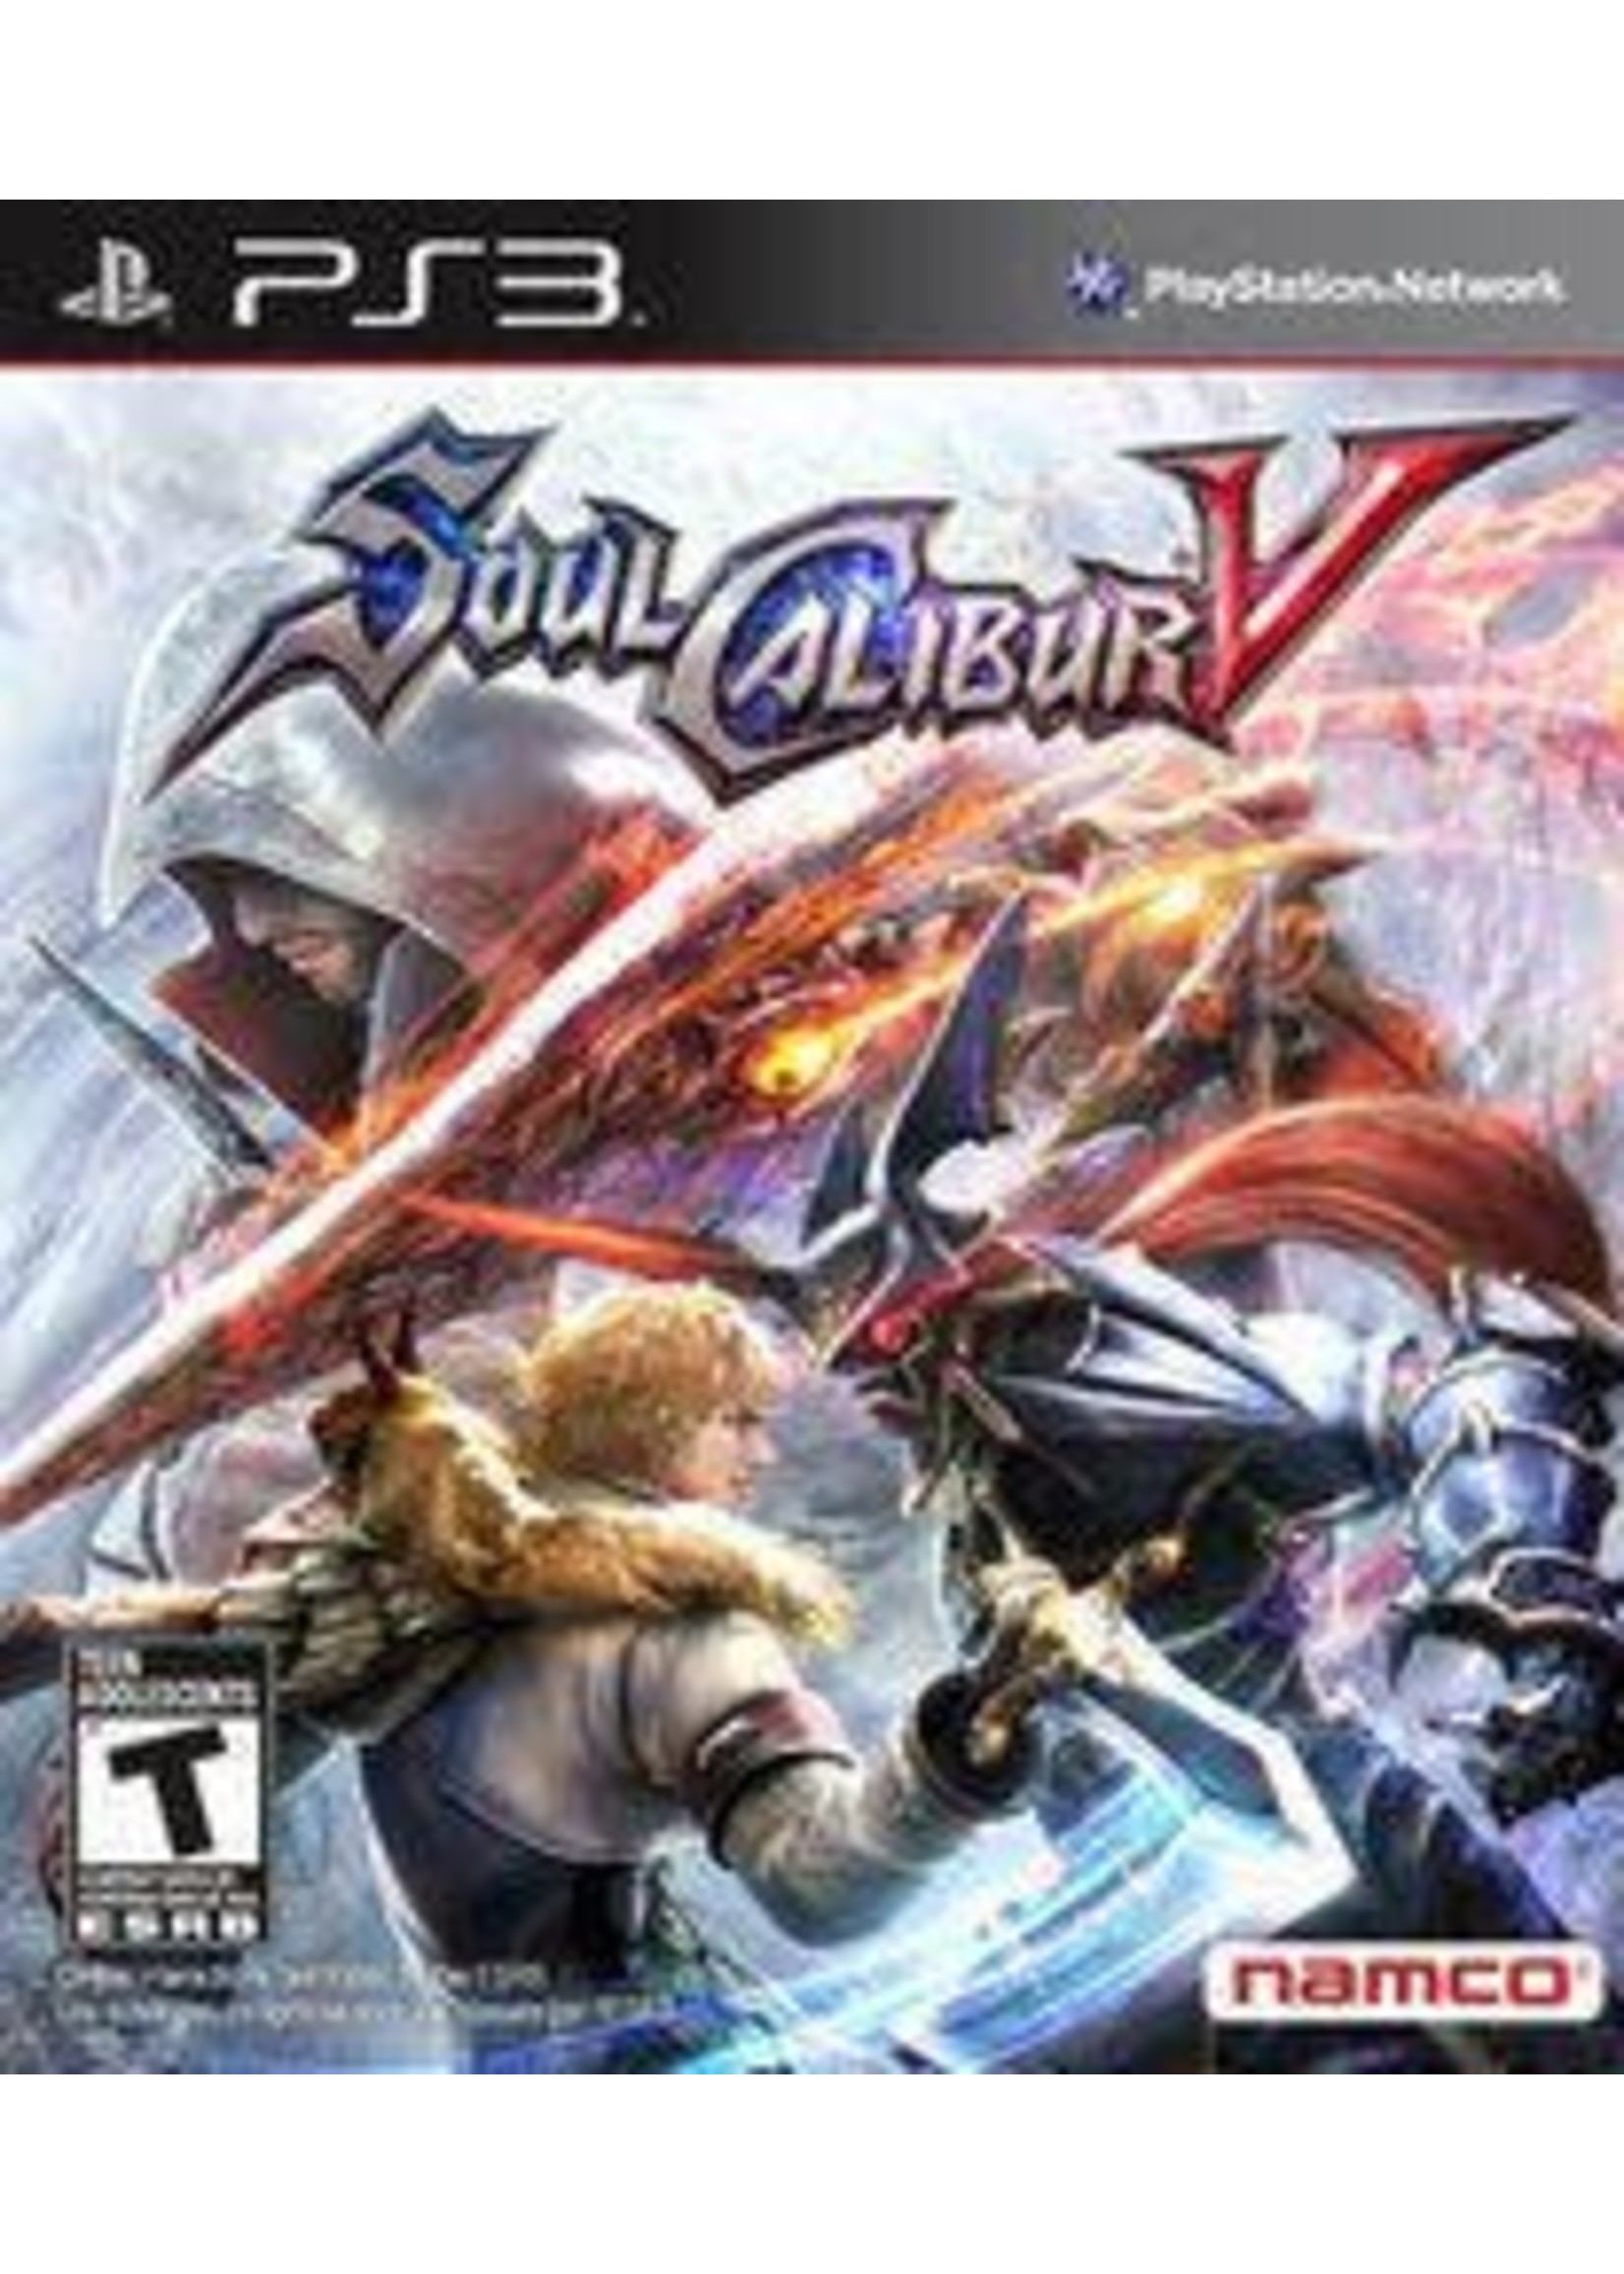 Soul Calibur V Playstation 3